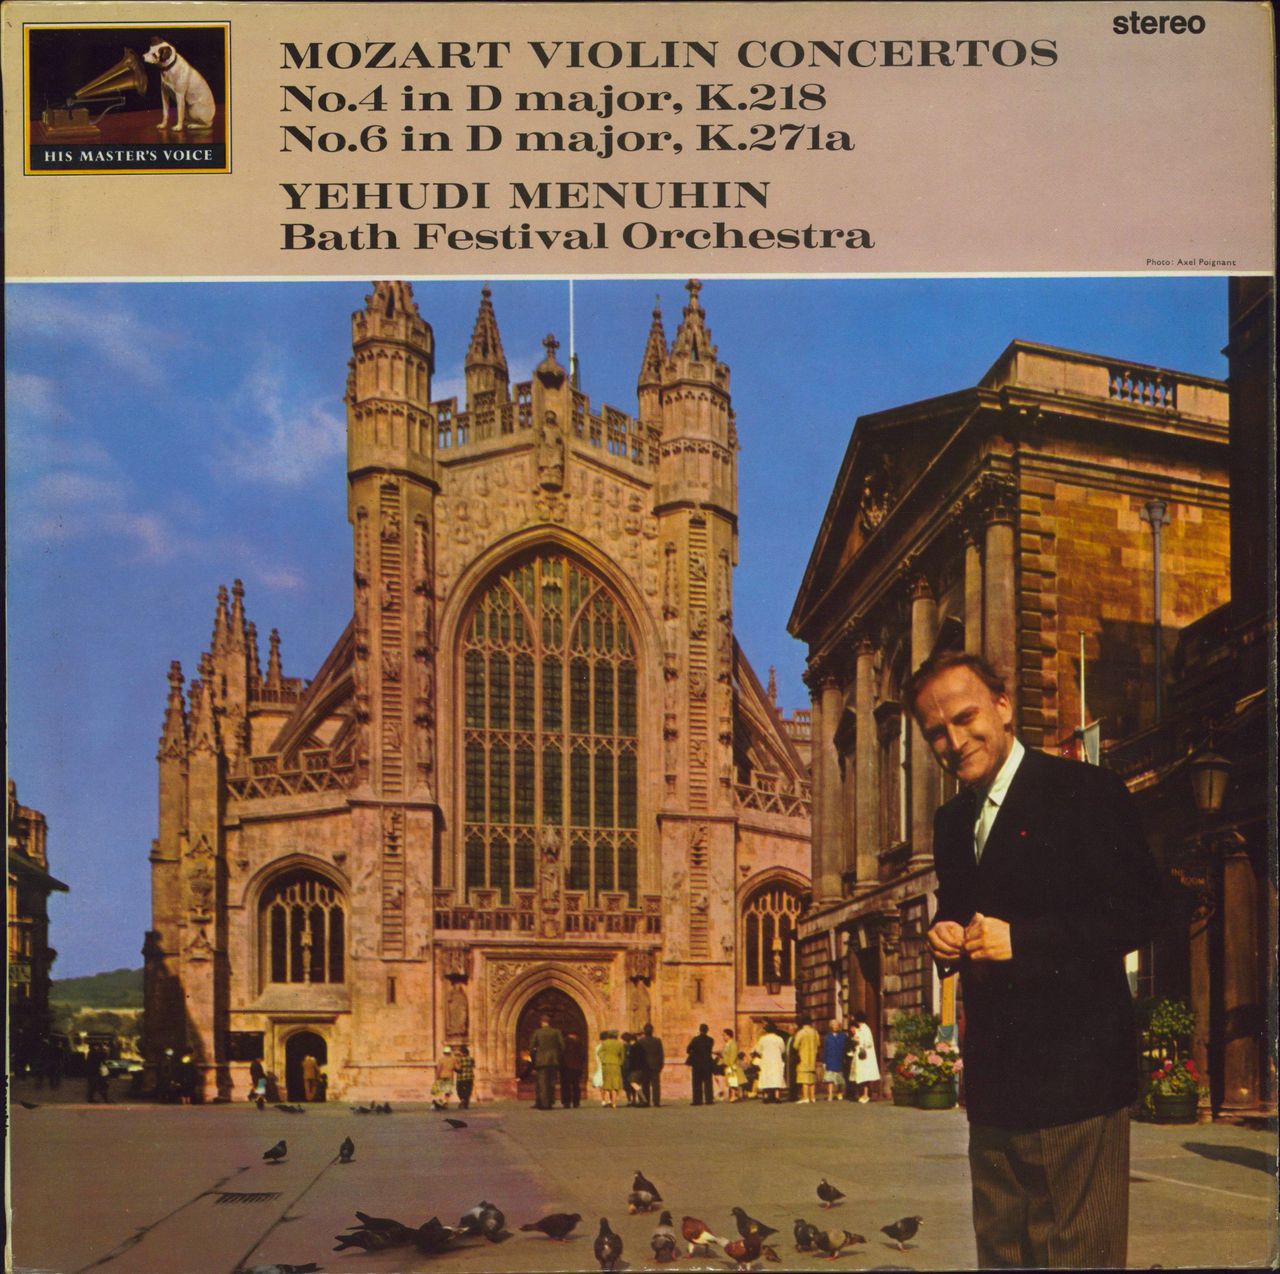 Yehudi Menuhin Mozart: Violin Concertos No 3 in G major & No 5 in A major 'Turkish' UK vinyl LP album (LP record) ASD473